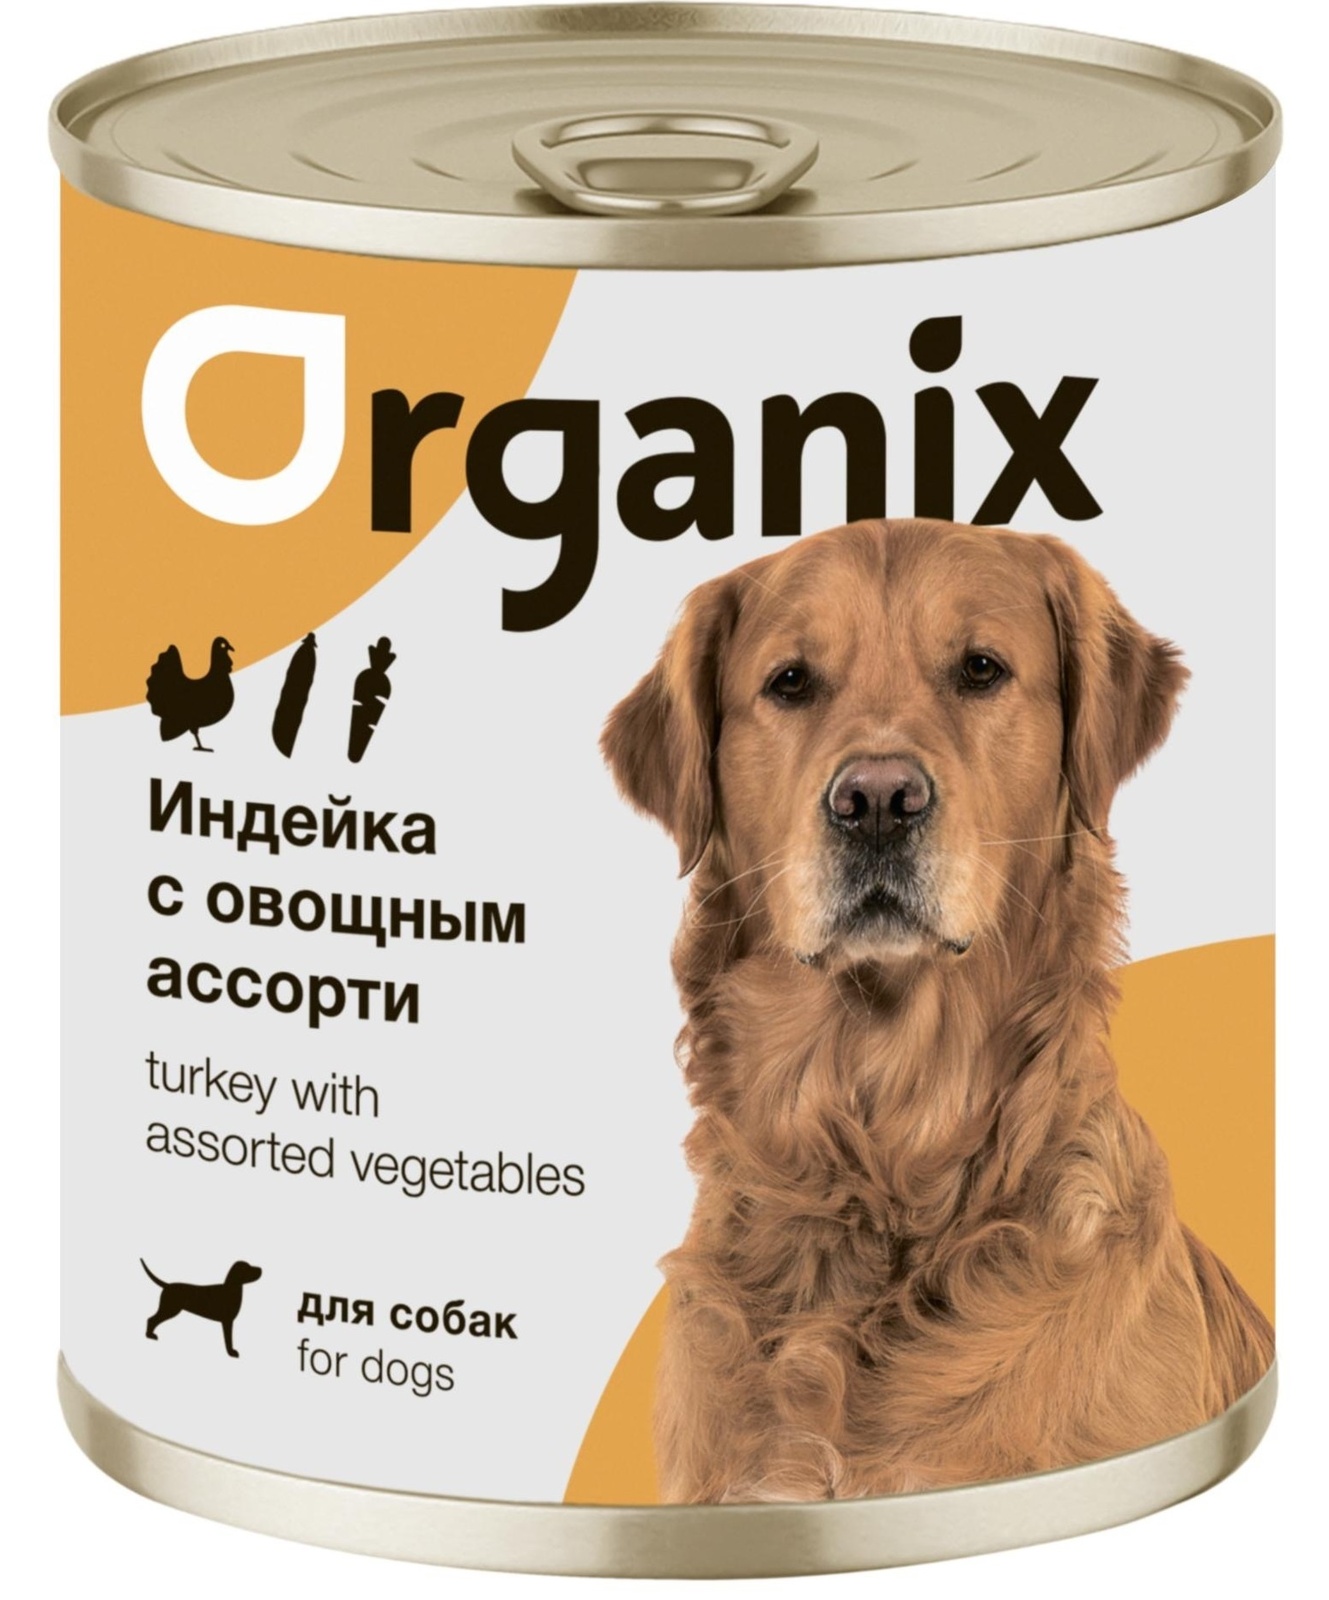 Organix консервы Organix консервы для собак Индейка с овощным ассорти (400 г) organix консервы organix монобелковые премиум консервы для собак с гусем 400 г